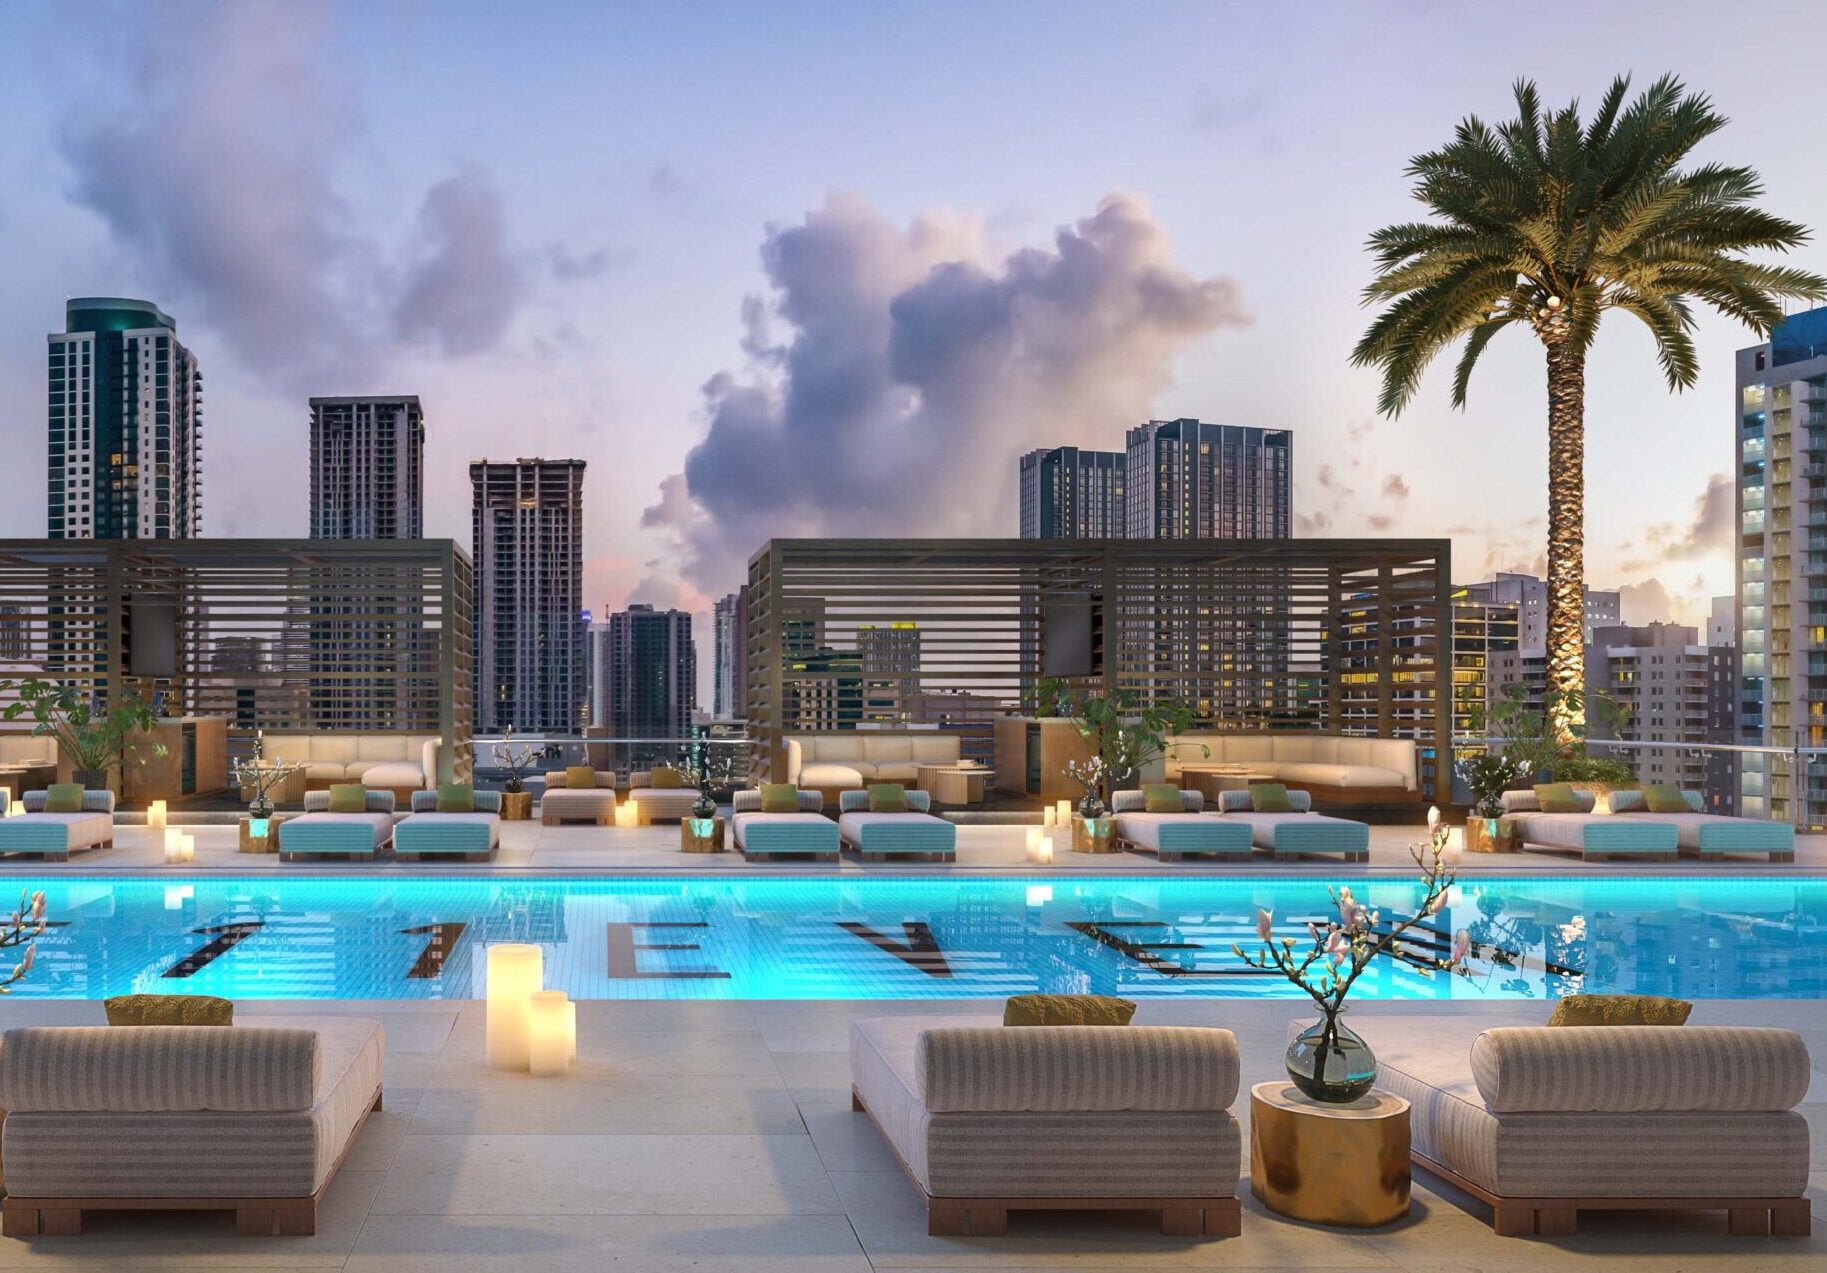 E11EVEN Residences Development Luxury Real Estate Miami